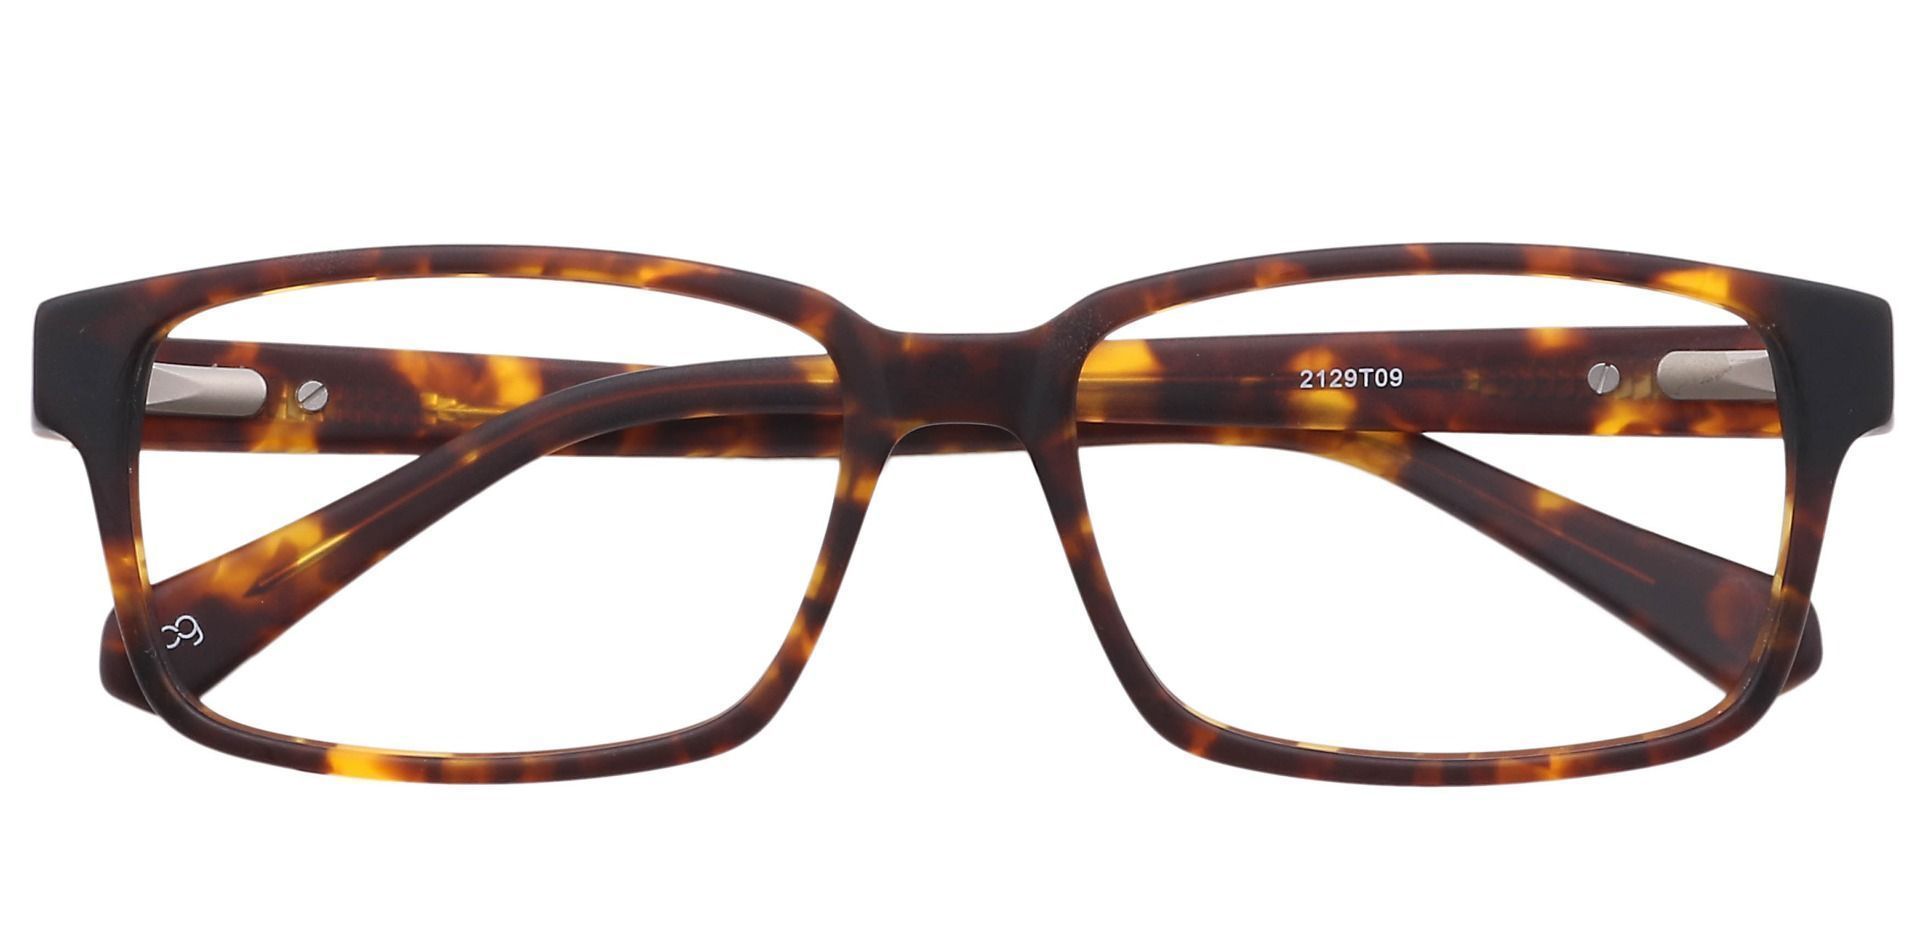 Clifford Rectangle Eyeglasses Frame - Tortoise